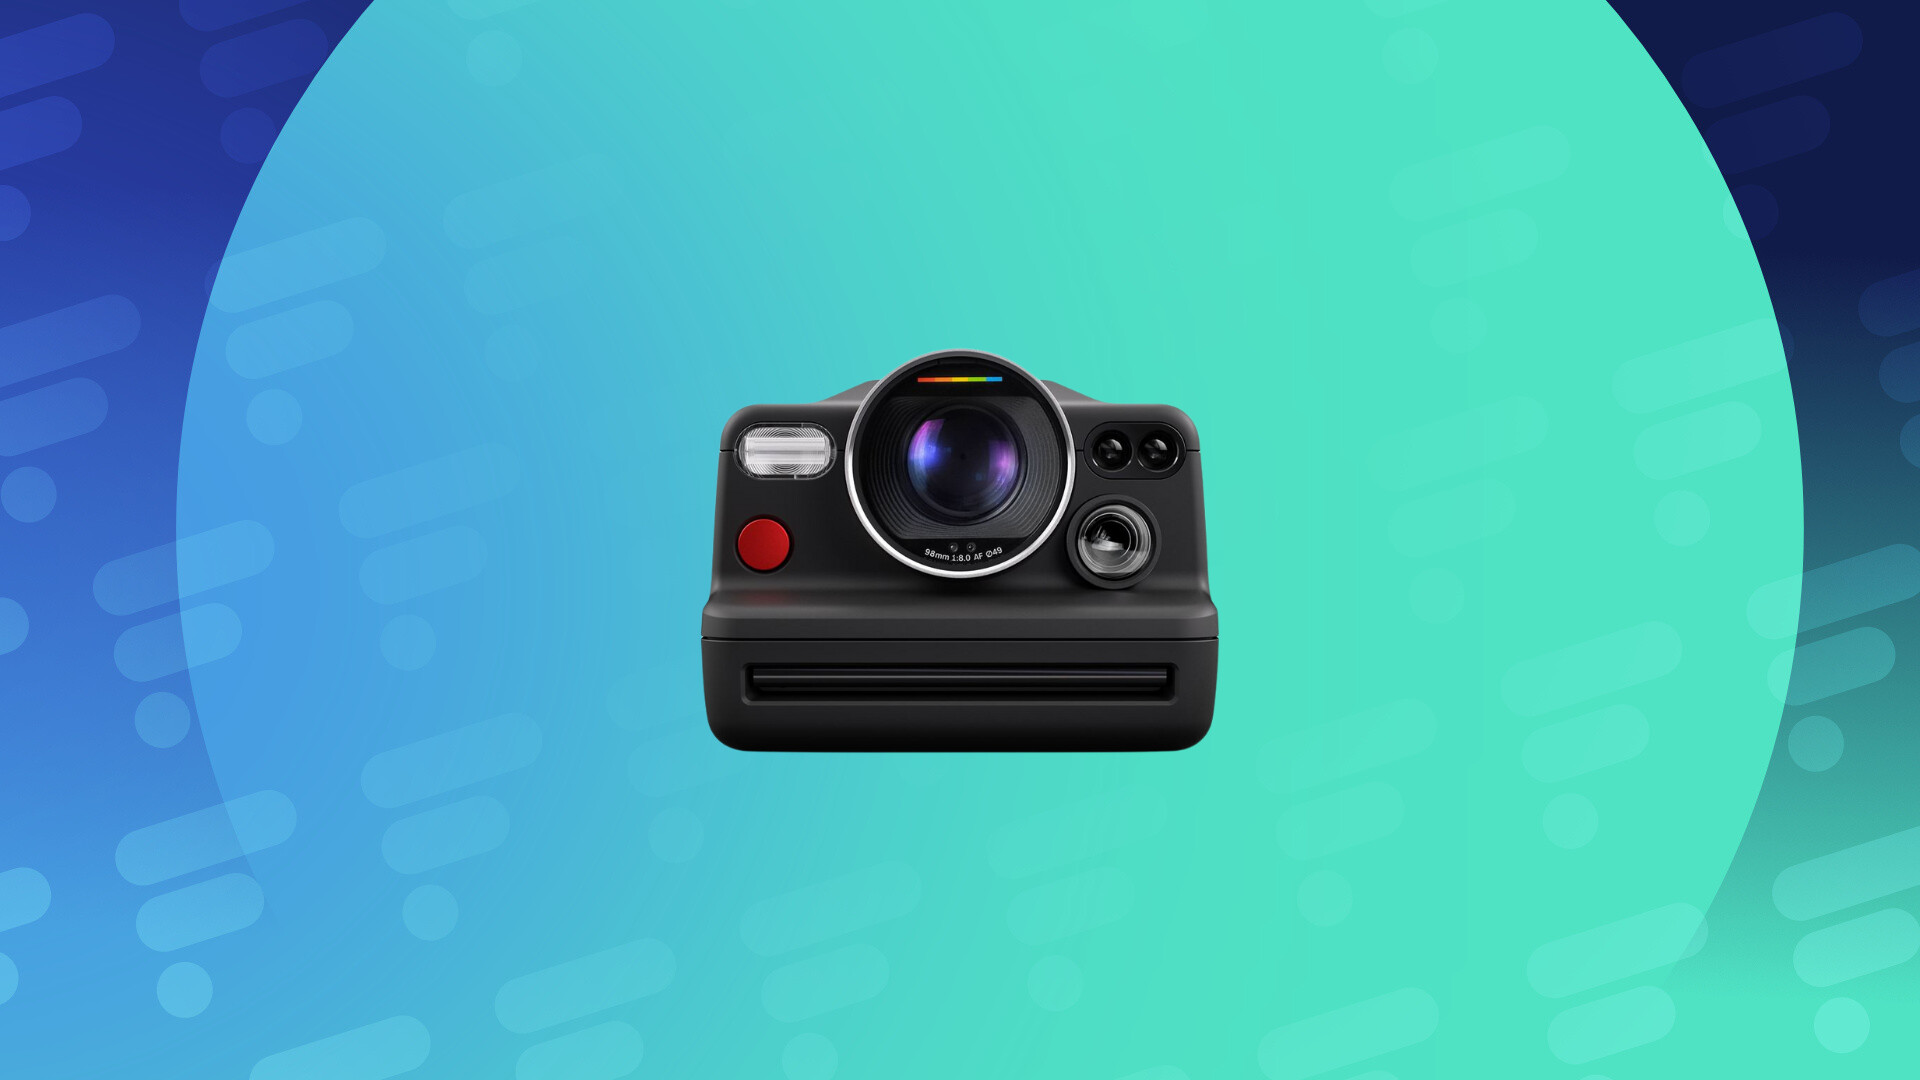 Guide d'achat photo 2024 : les meilleurs appareils et films